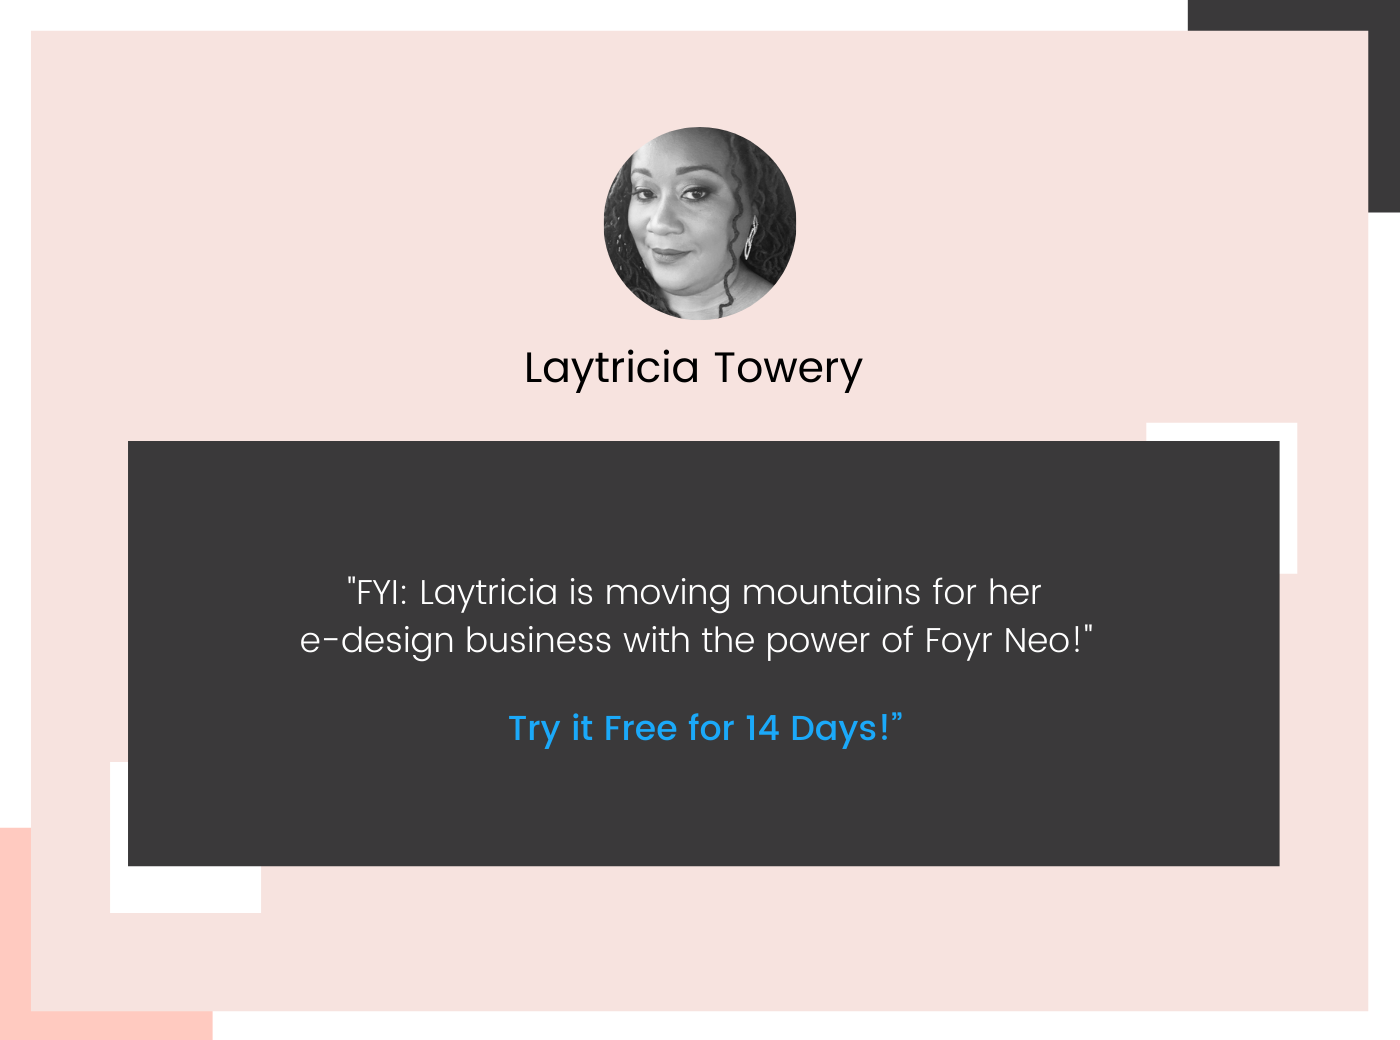 Why e-design - Laytricia